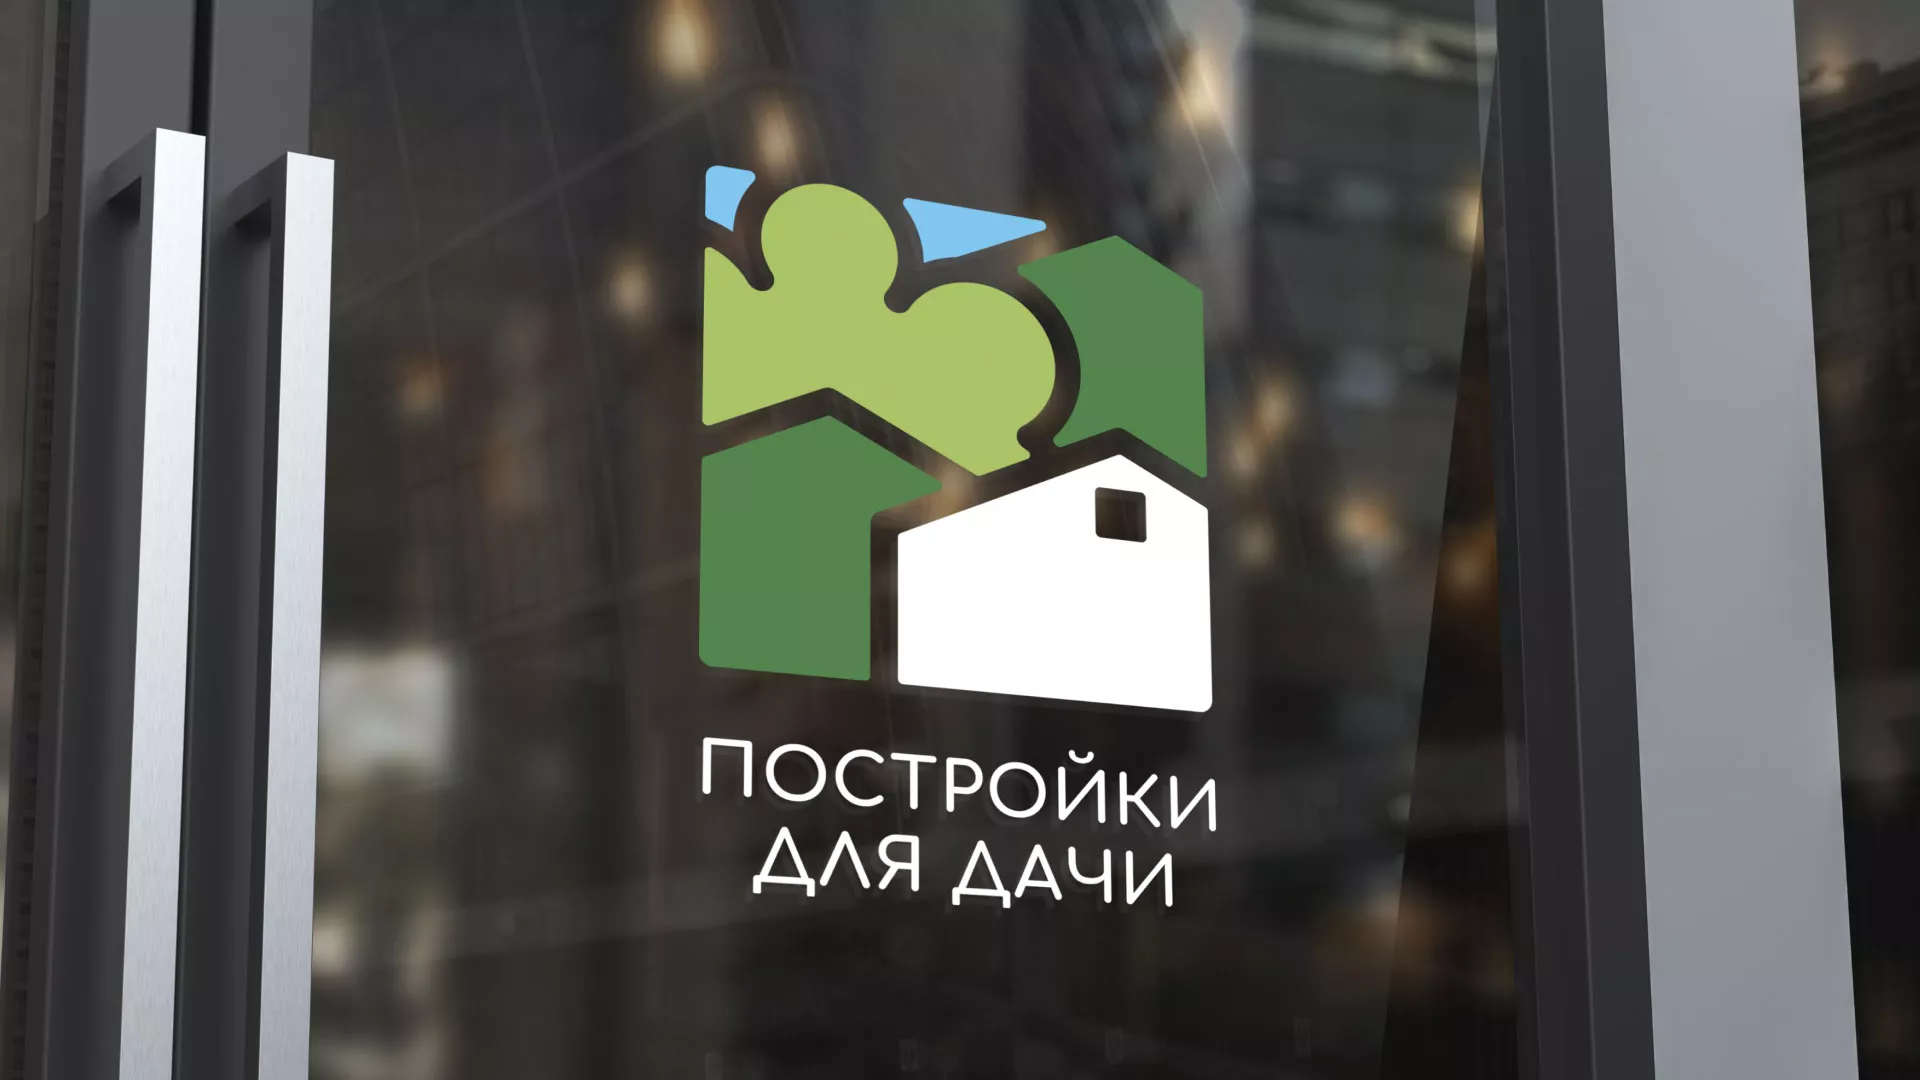 Разработка логотипа в Пыталово для компании «Постройки для дачи»